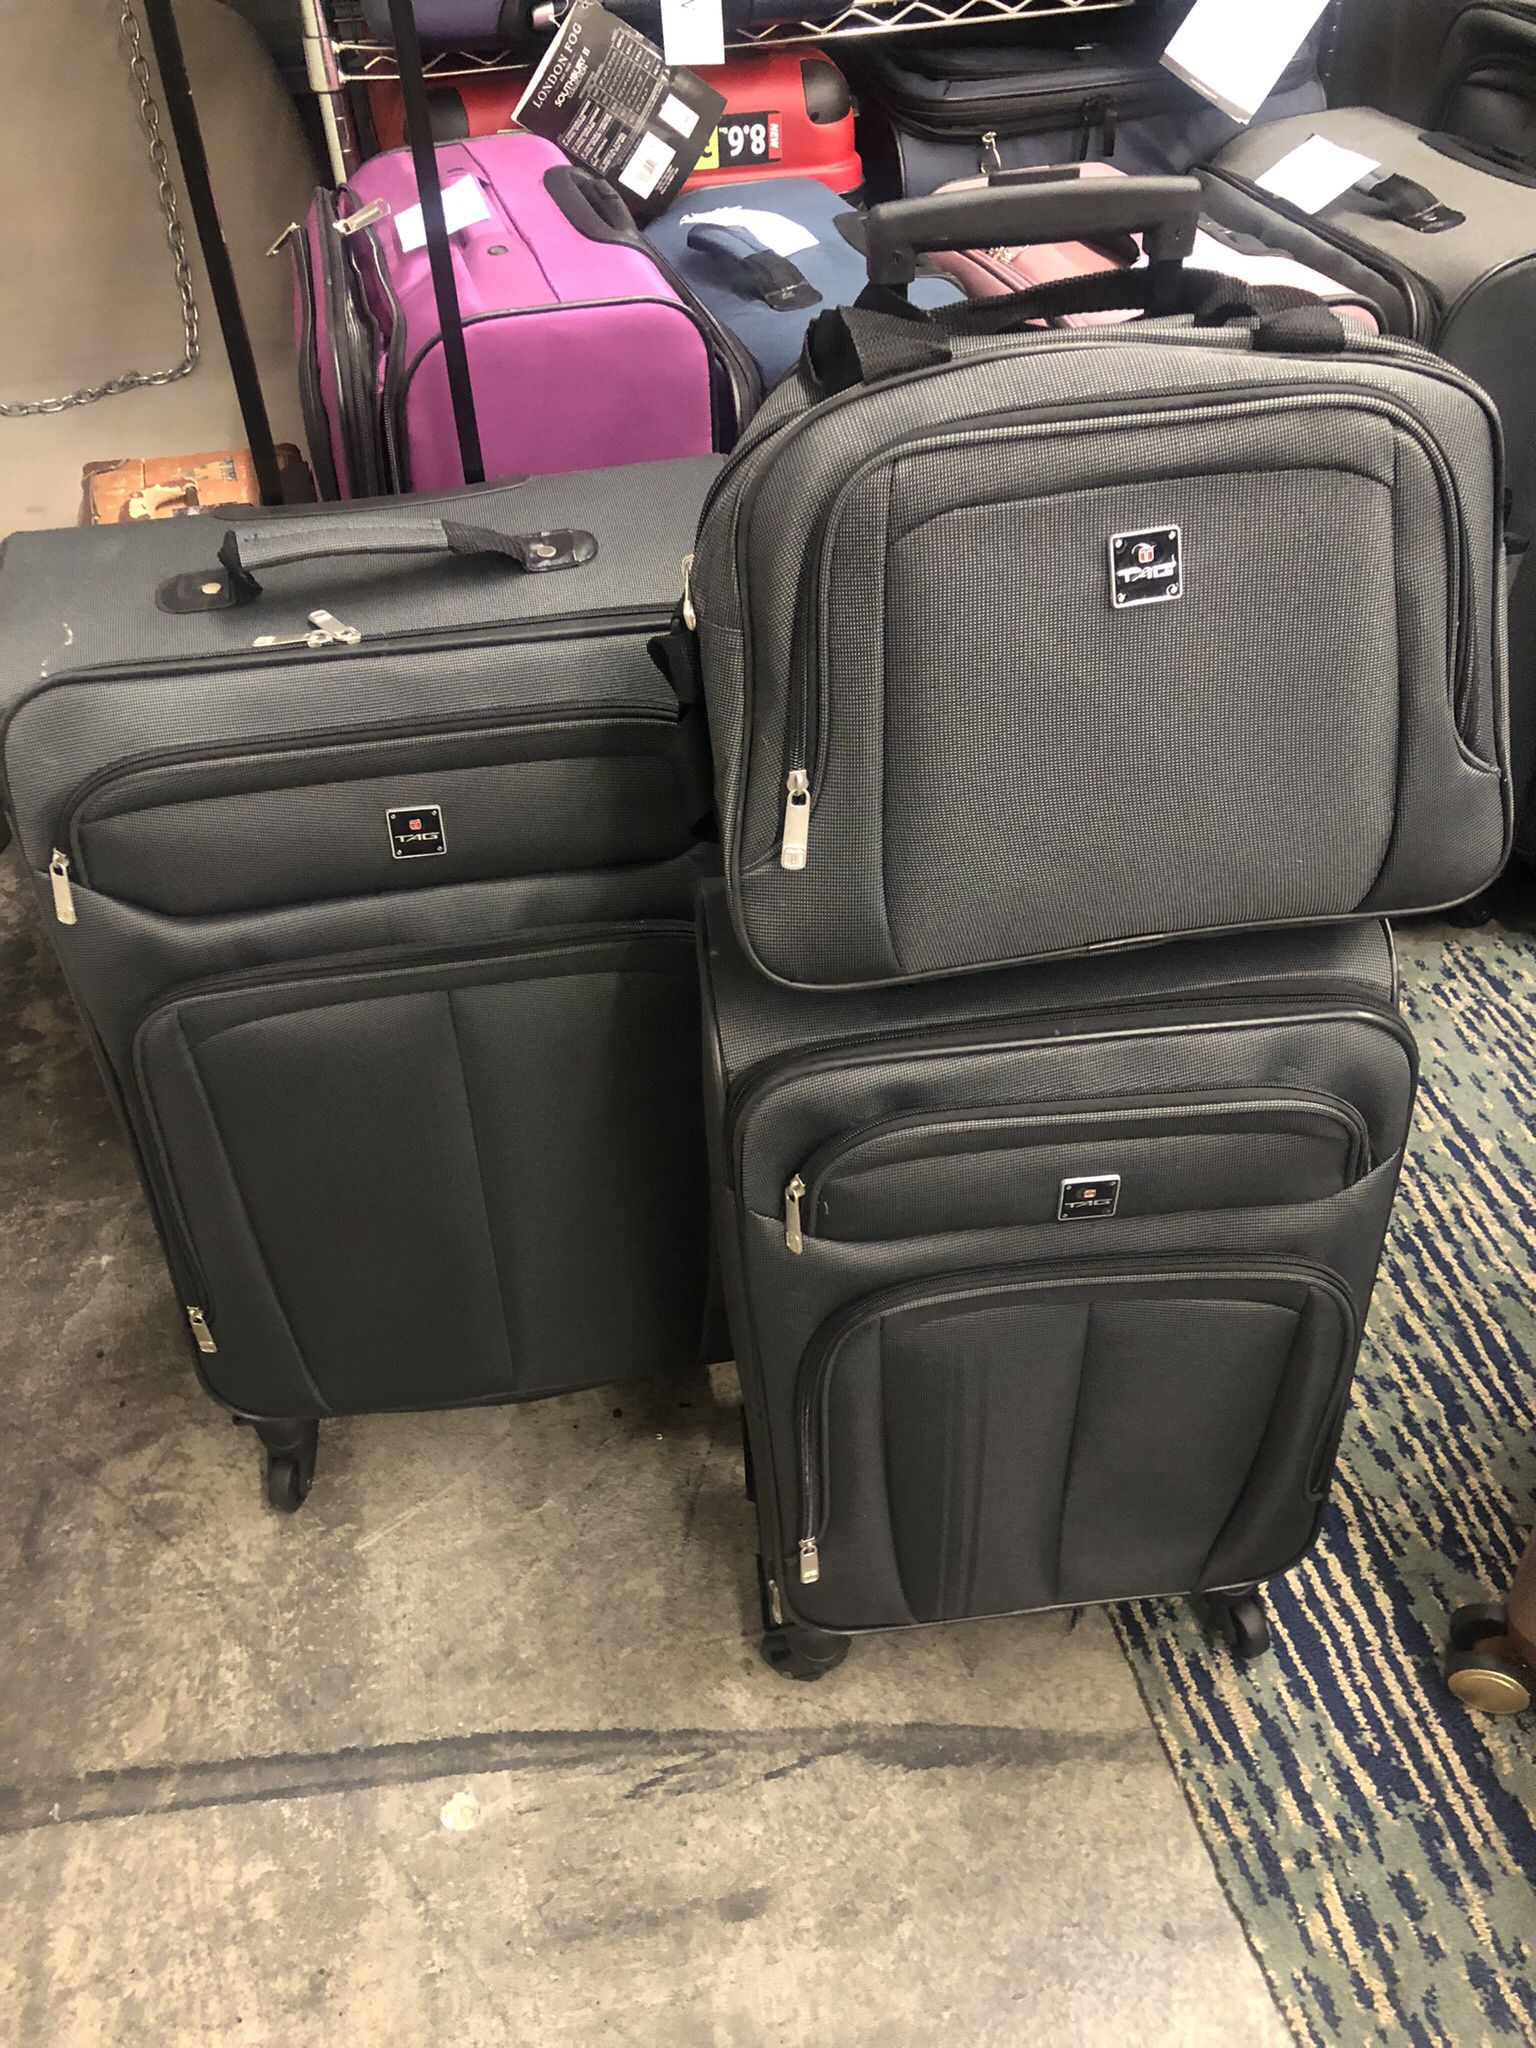 5 Pcs Luggage Set New